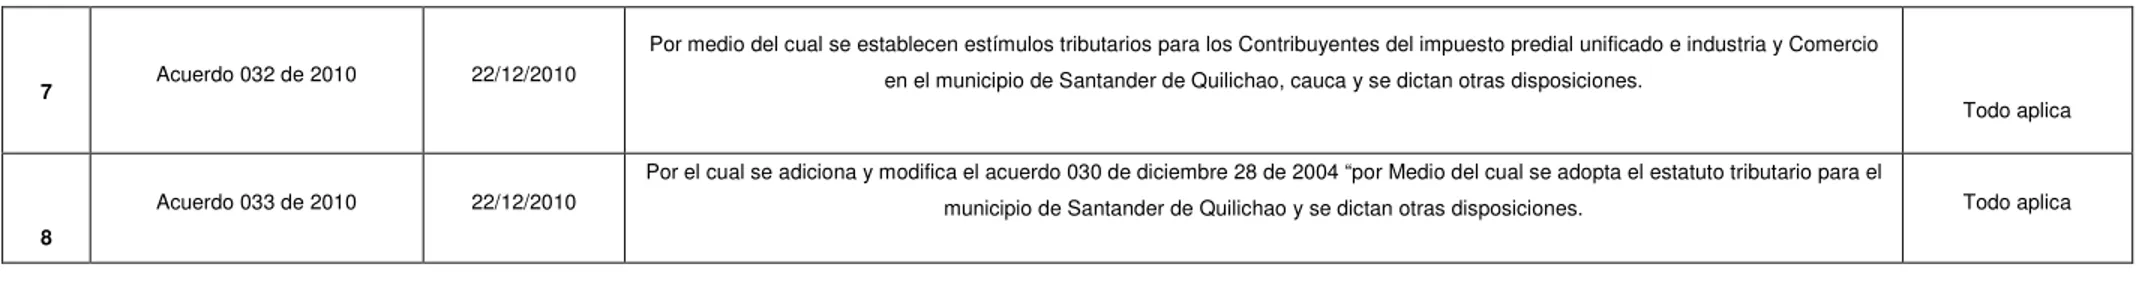 Cuadro 1. Normatividad que rige el impuesto de industria y comercio, avisos y tableros , Santander de Quilichao